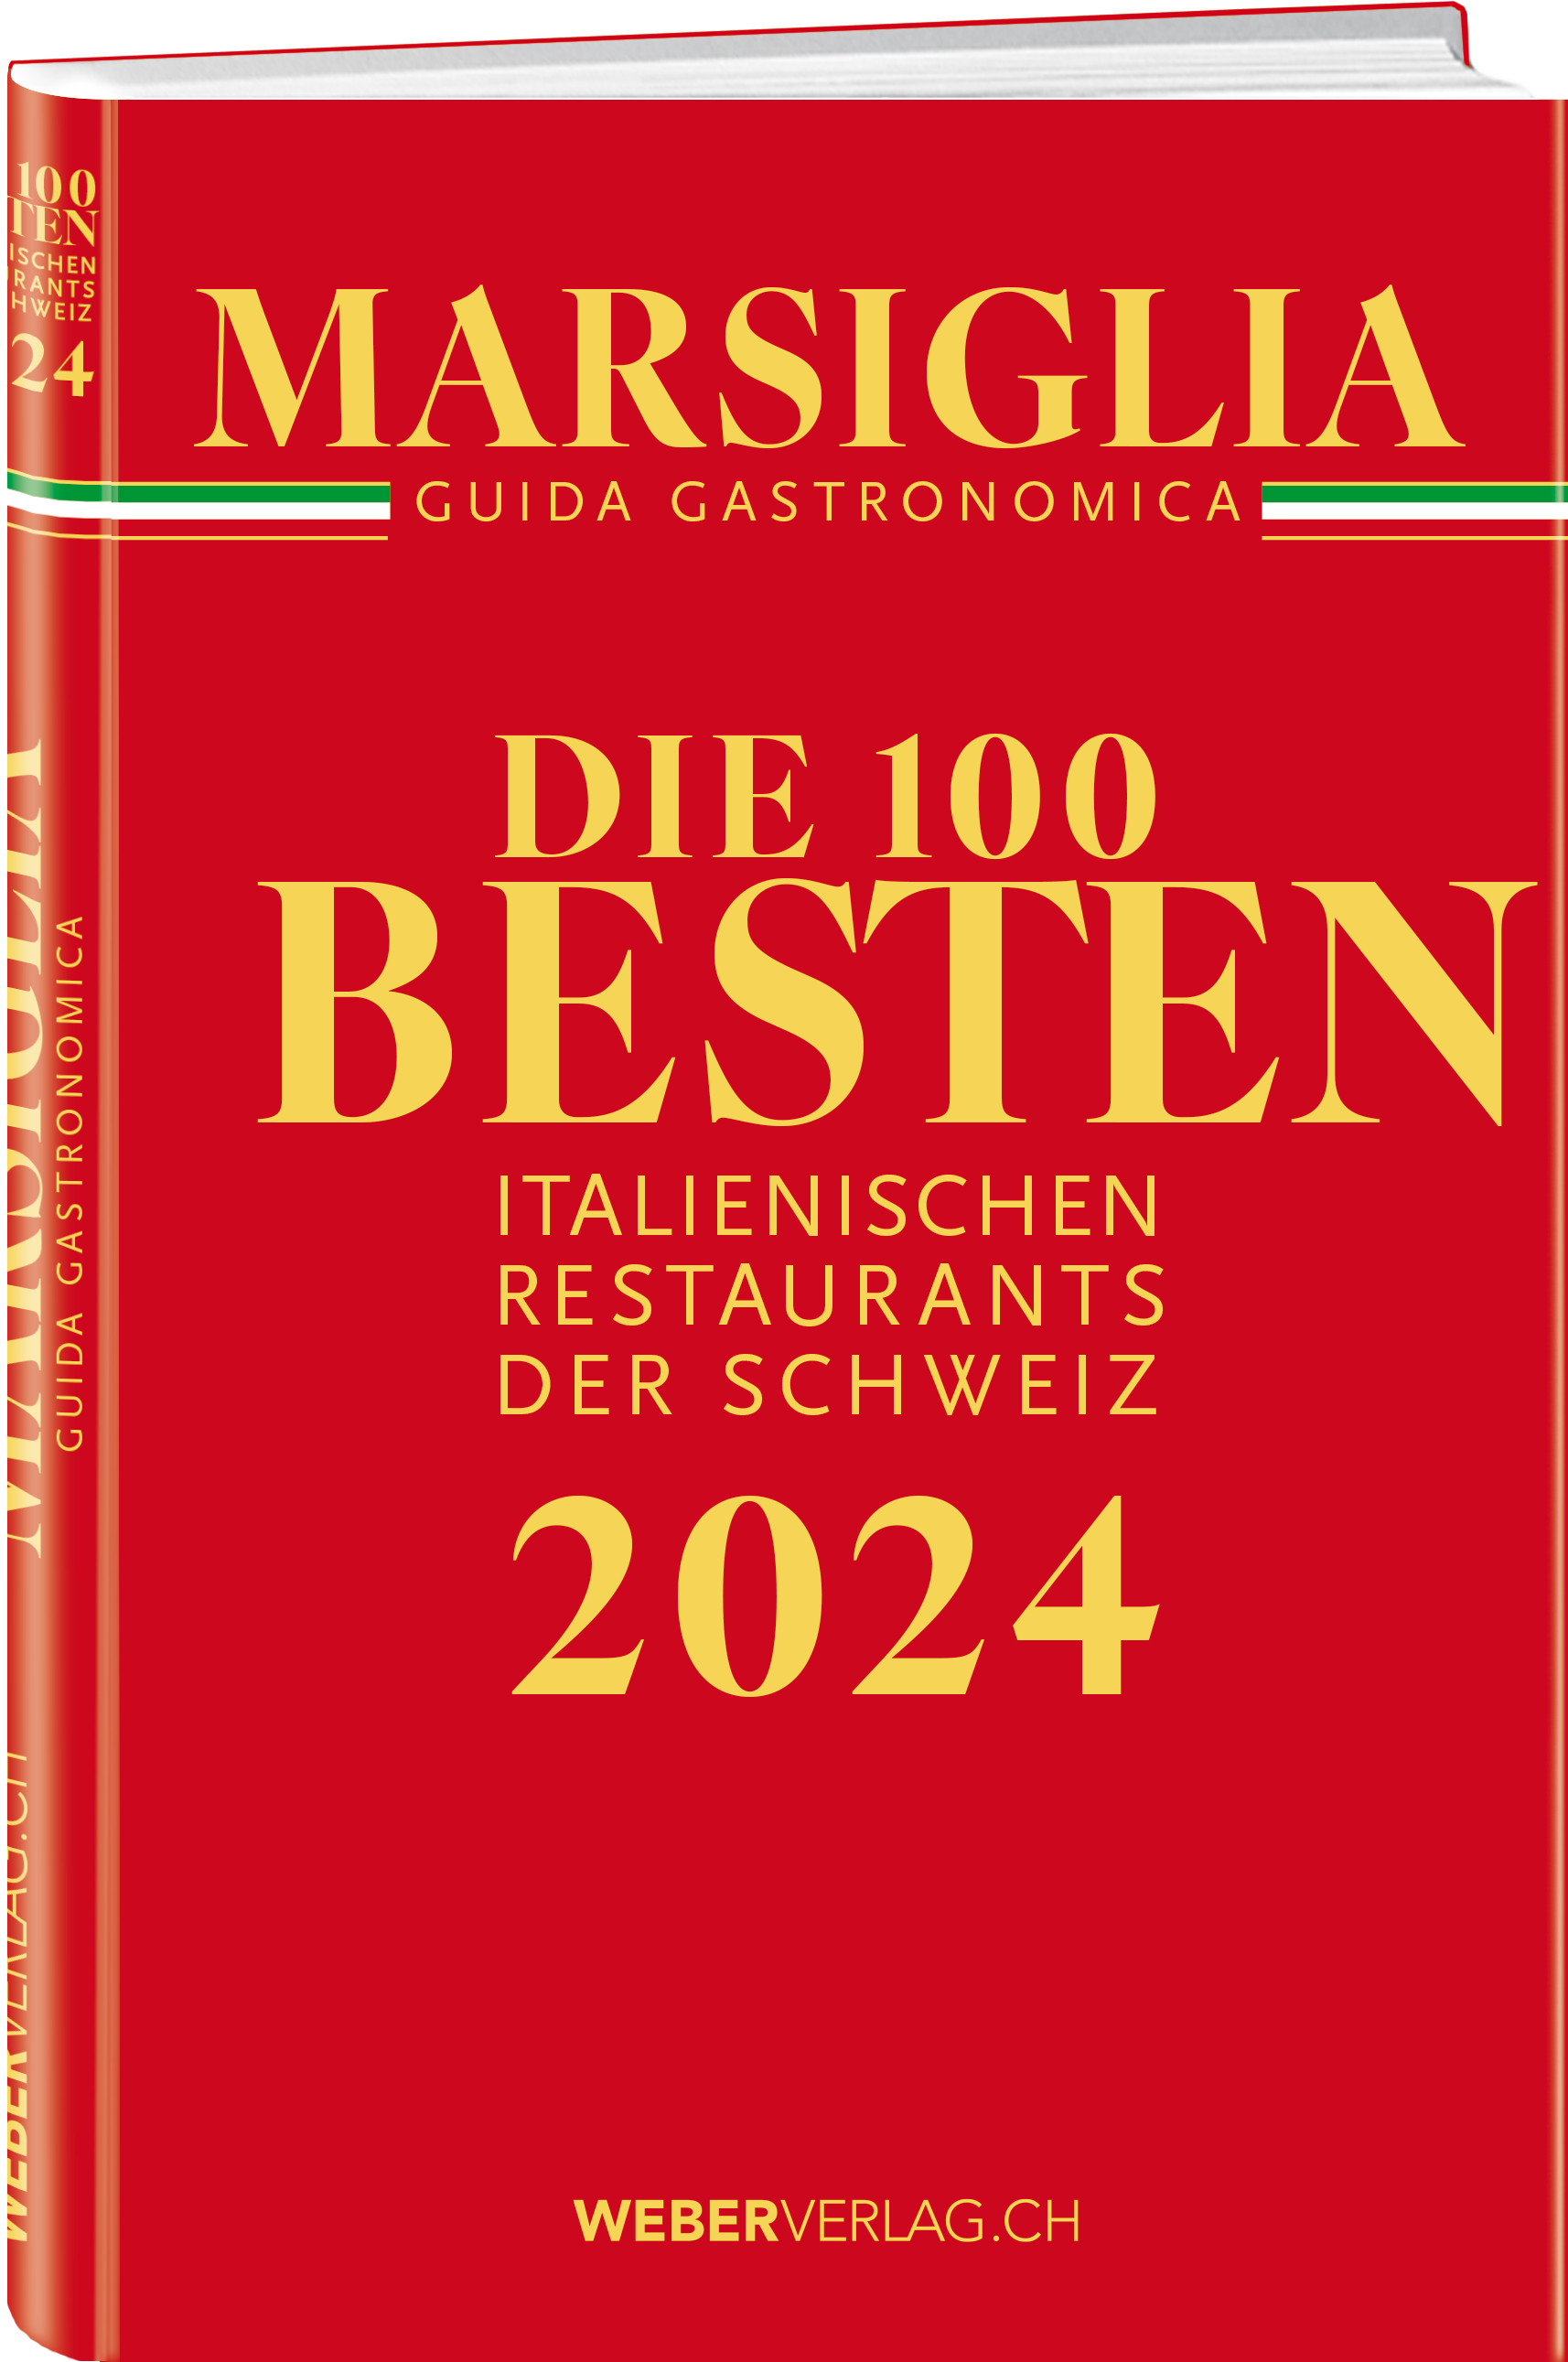 Michel Marsiglia | Die 100 besten italienischen Restaurants der Schweiz 2024 - • WEBER VERLAG